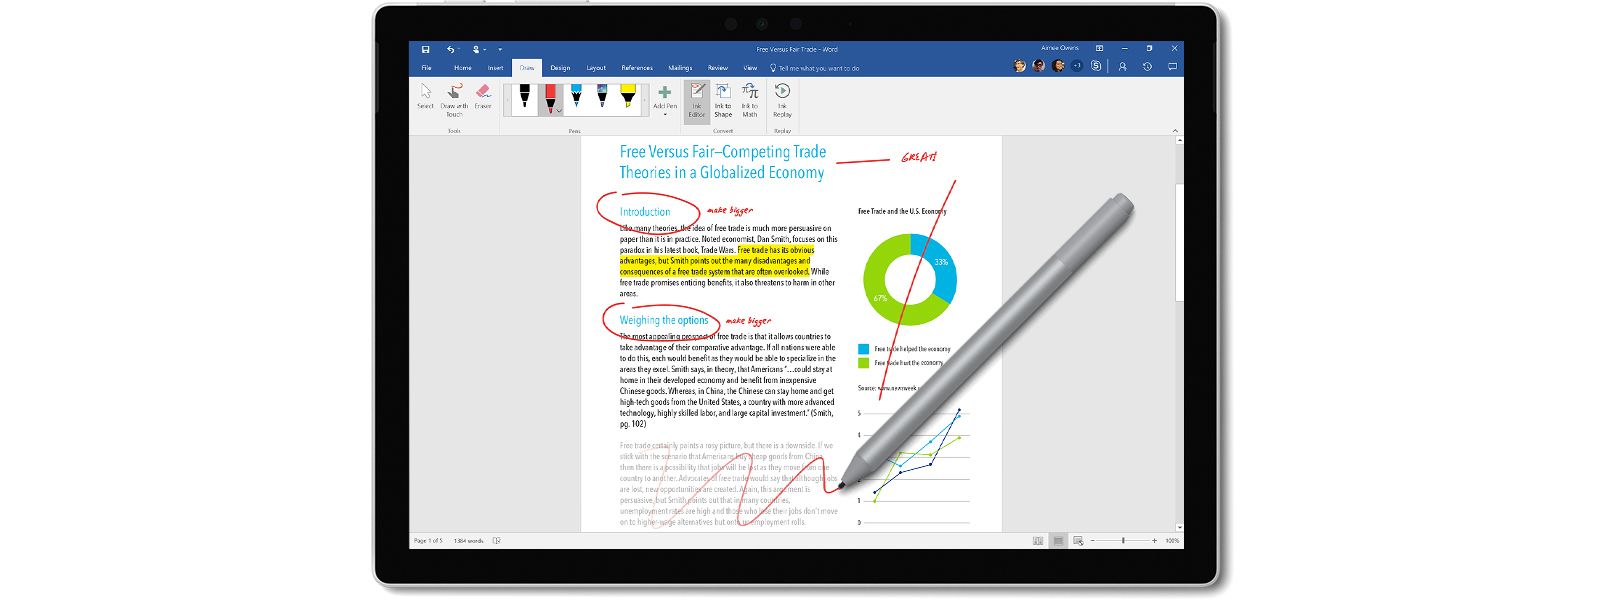 Microsoft จดสิทธิบัตร Surface Pen รุ่นใหม่ เพิ่มฟีเจอร์ในการใช้งานใหม่ๆ อีกเพียบ